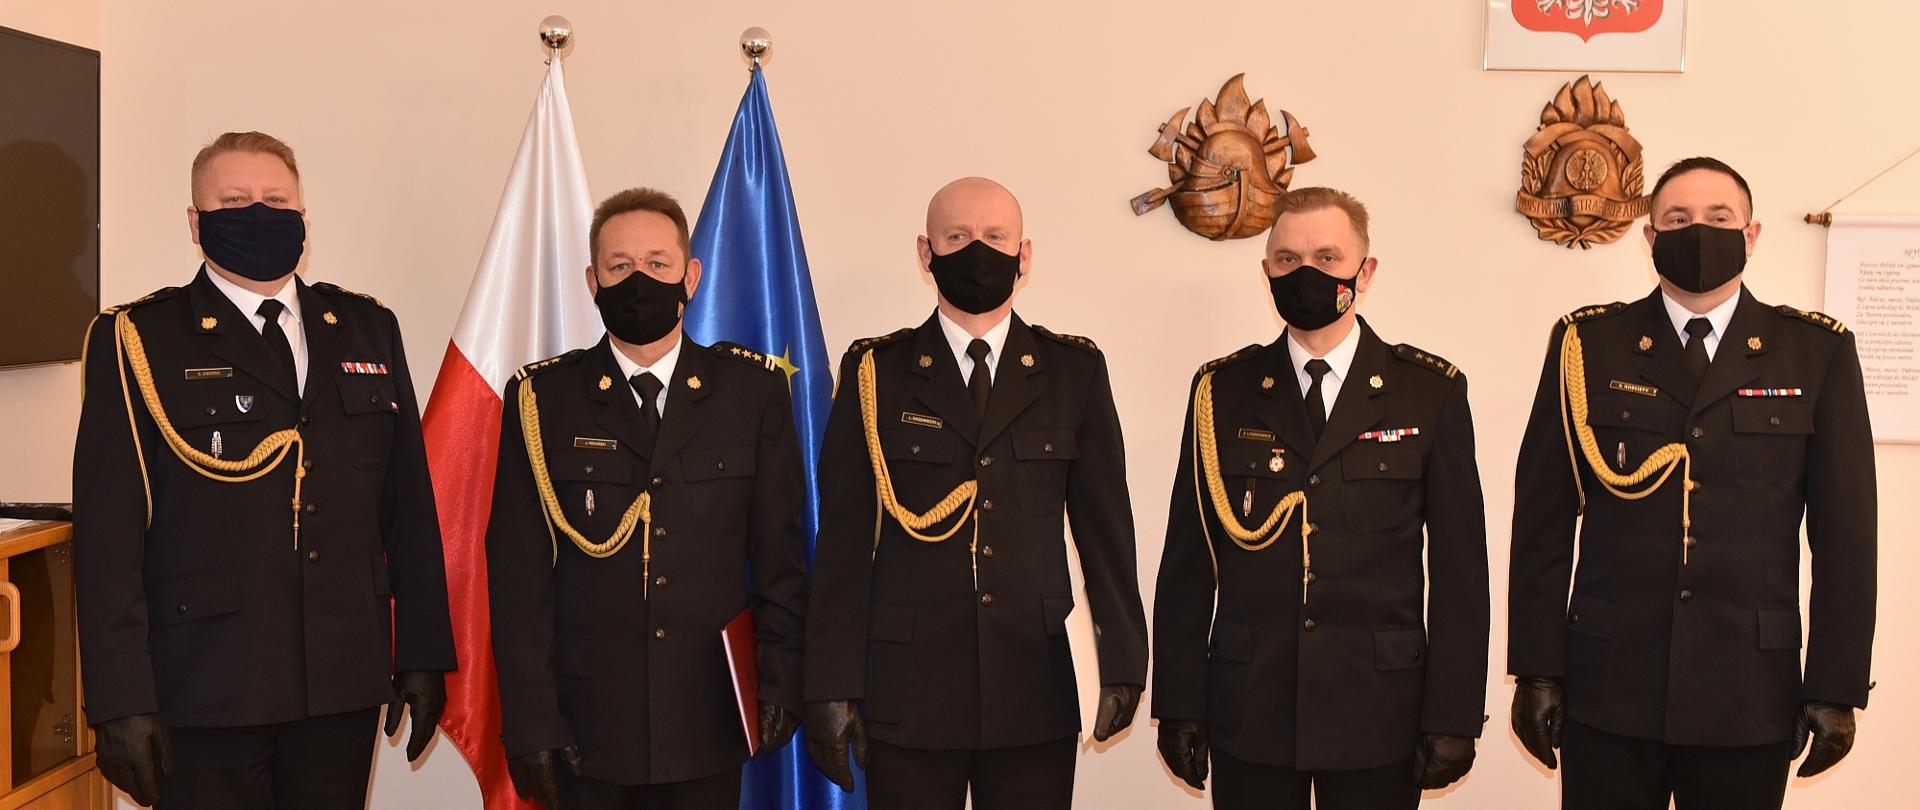 Na zdjęciu znajduje się pięciu strażaków w mundurach wyjściowych, w tle flagi polski i unii europejskiej